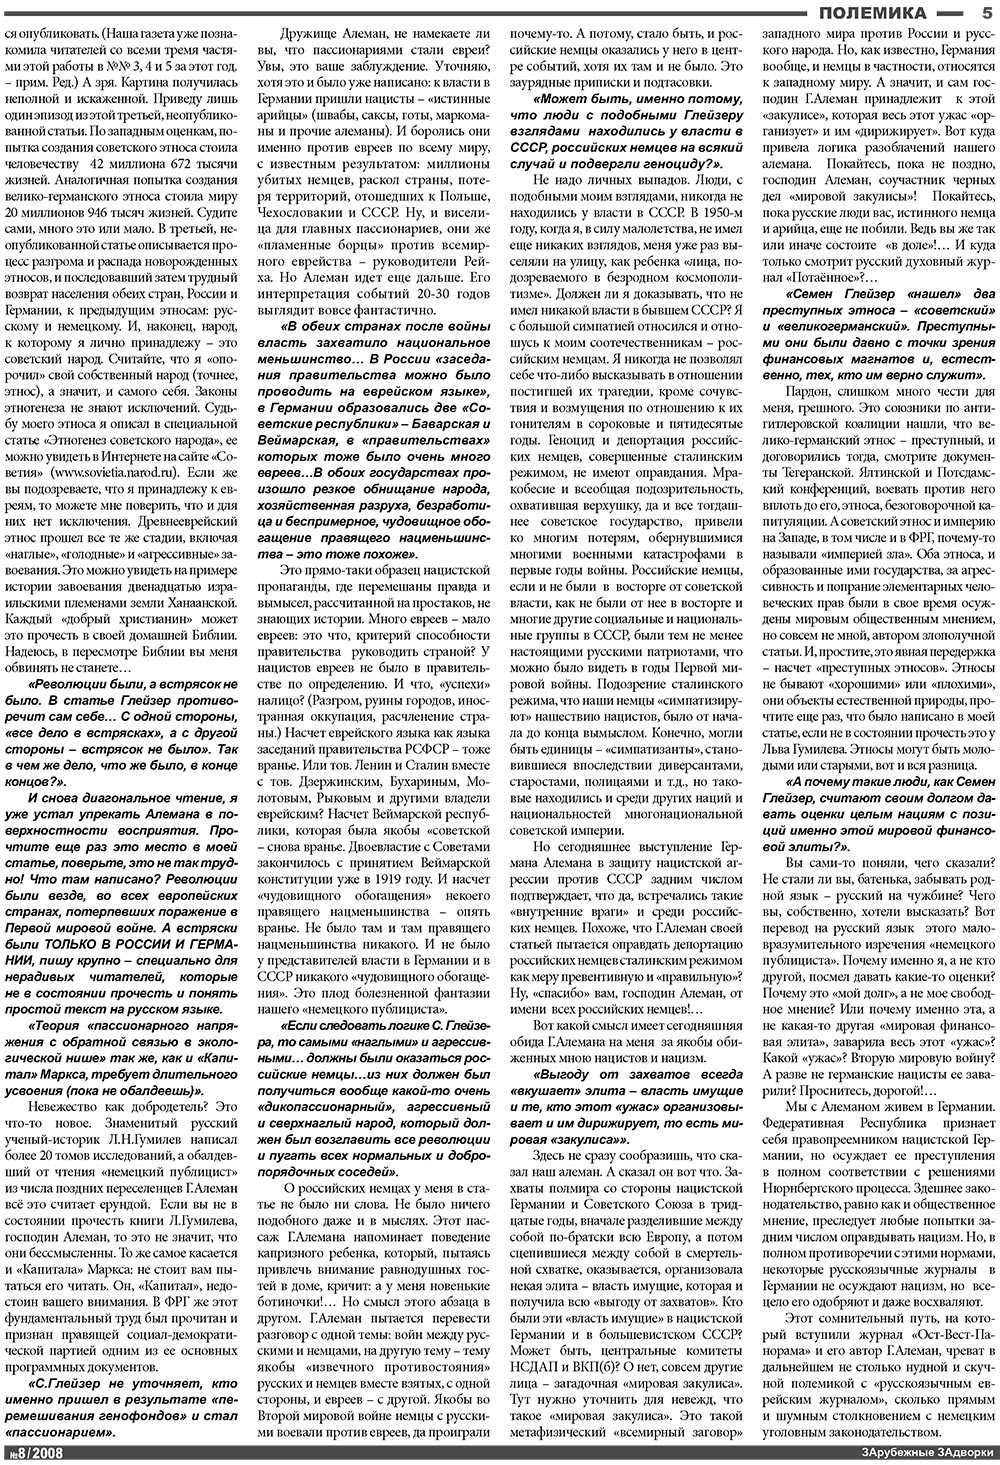 Известия BW, газета. 2008 №8 стр.5